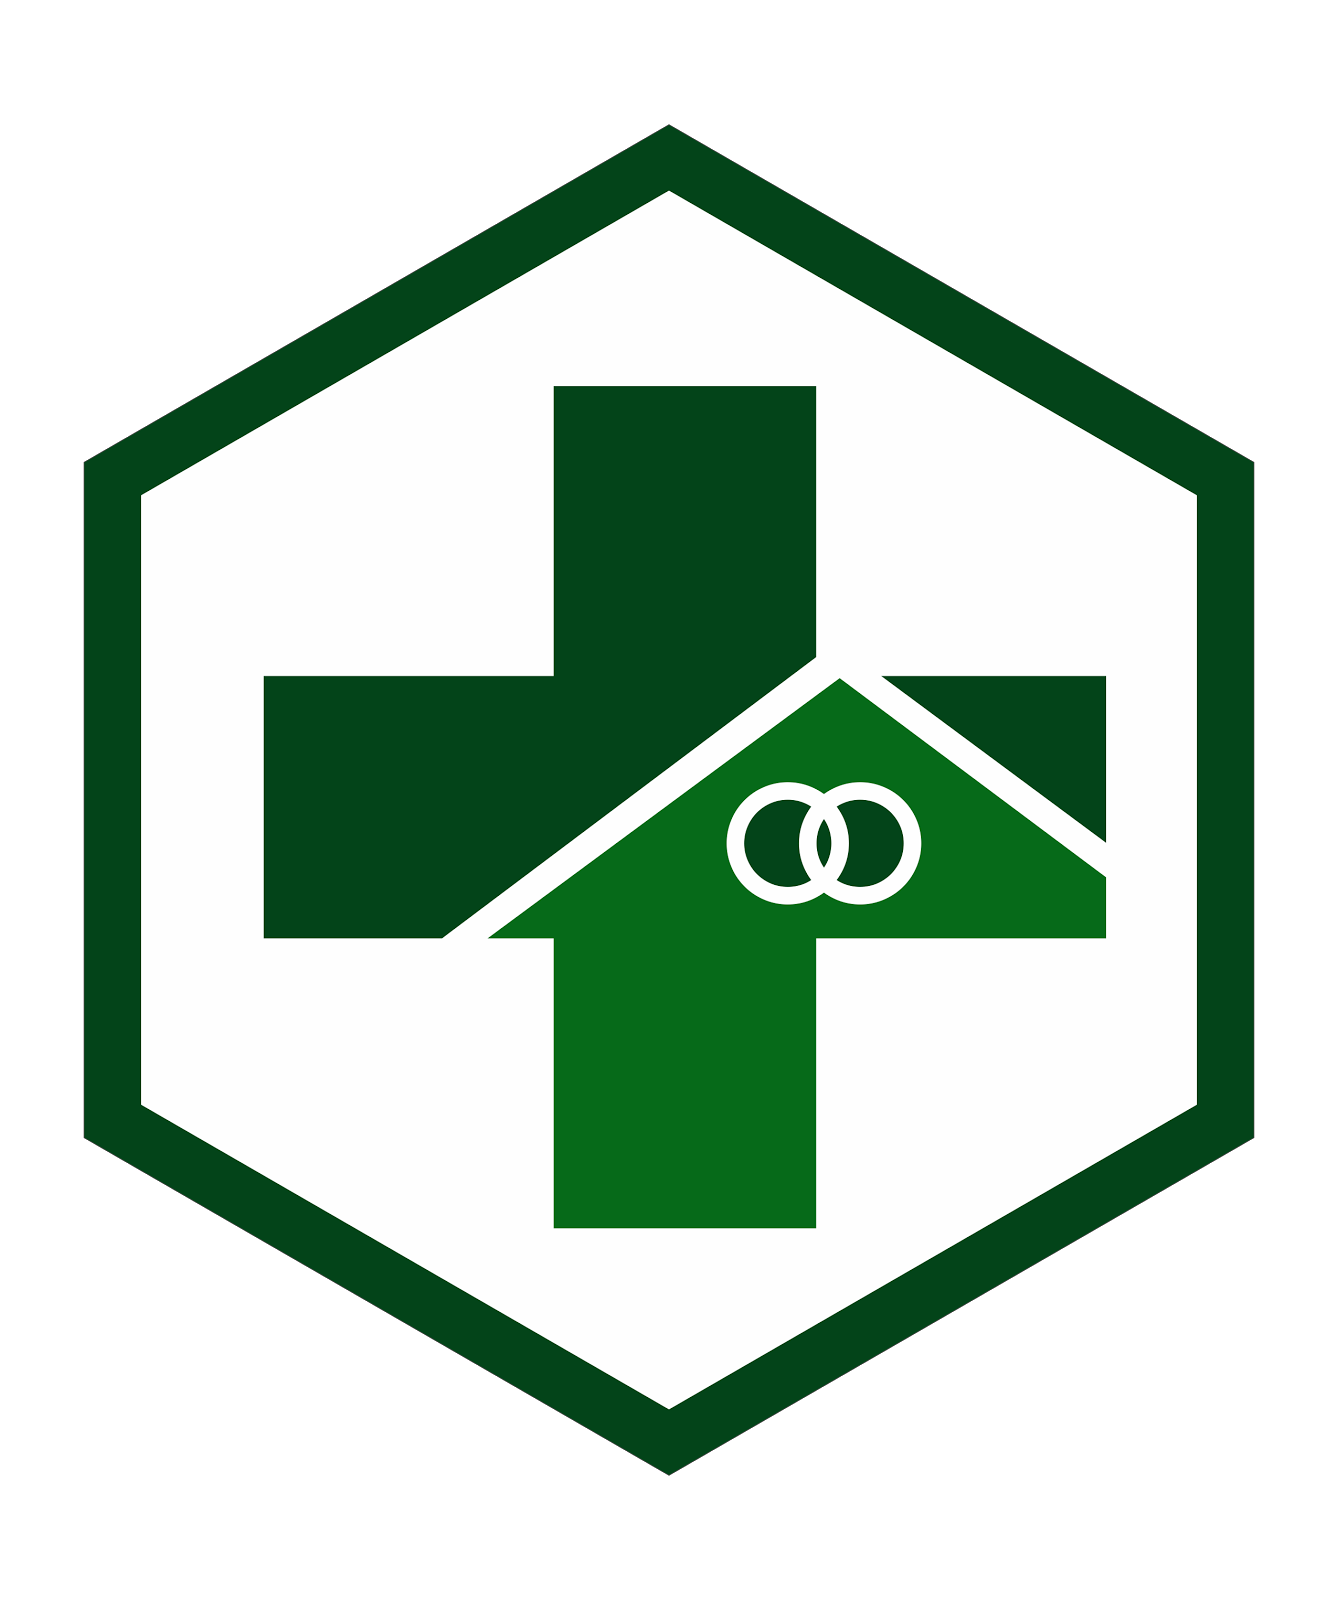 Logo Puskesmas Terbaru 2018 - KibrisPDR